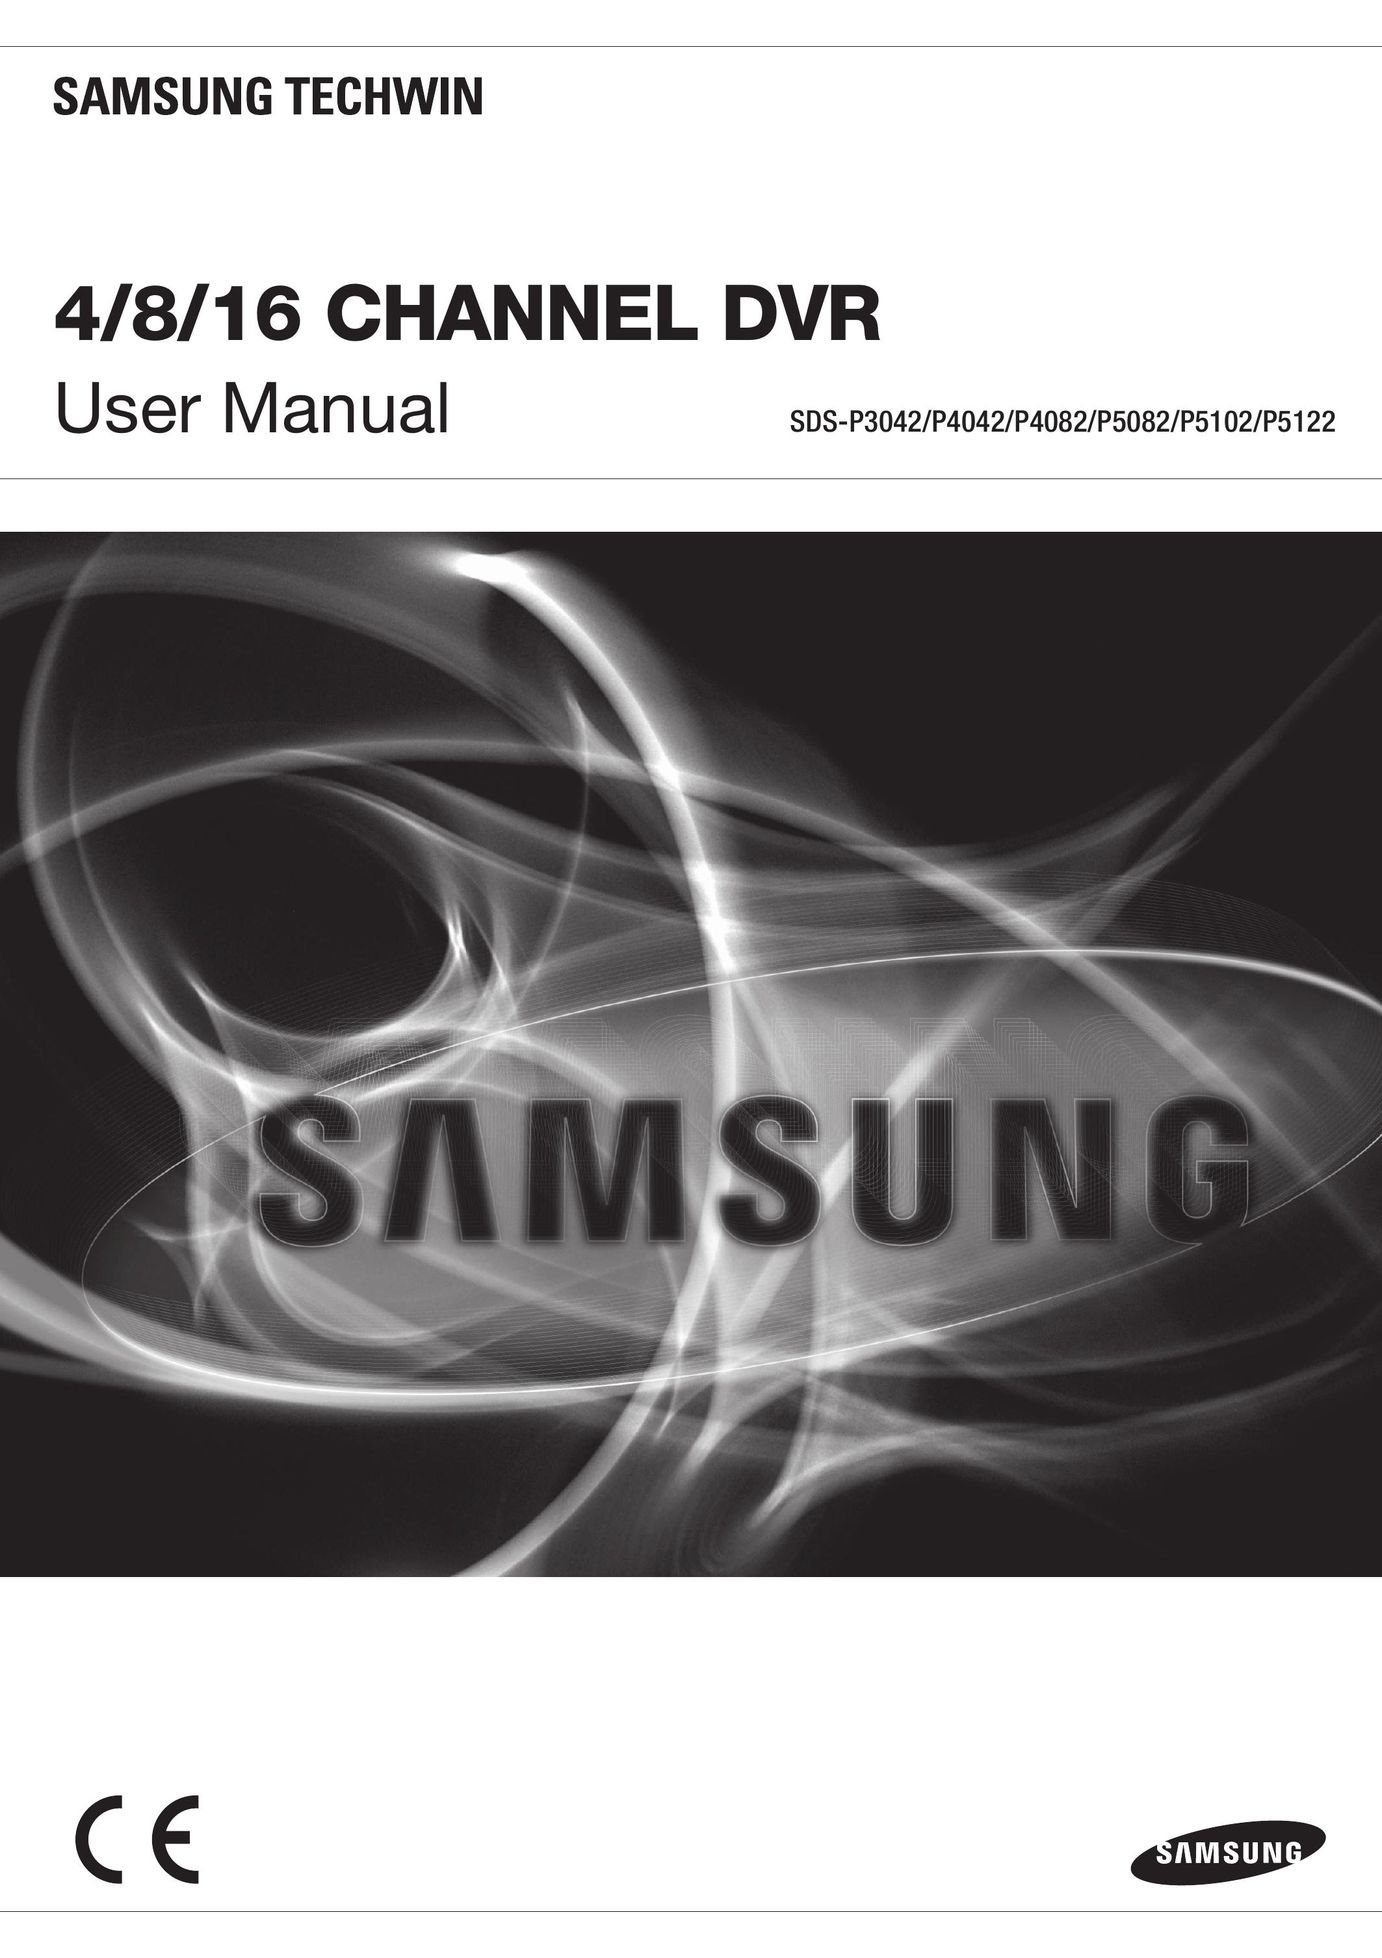 Samsung SDS-P5102/P5122 DVR User Manual